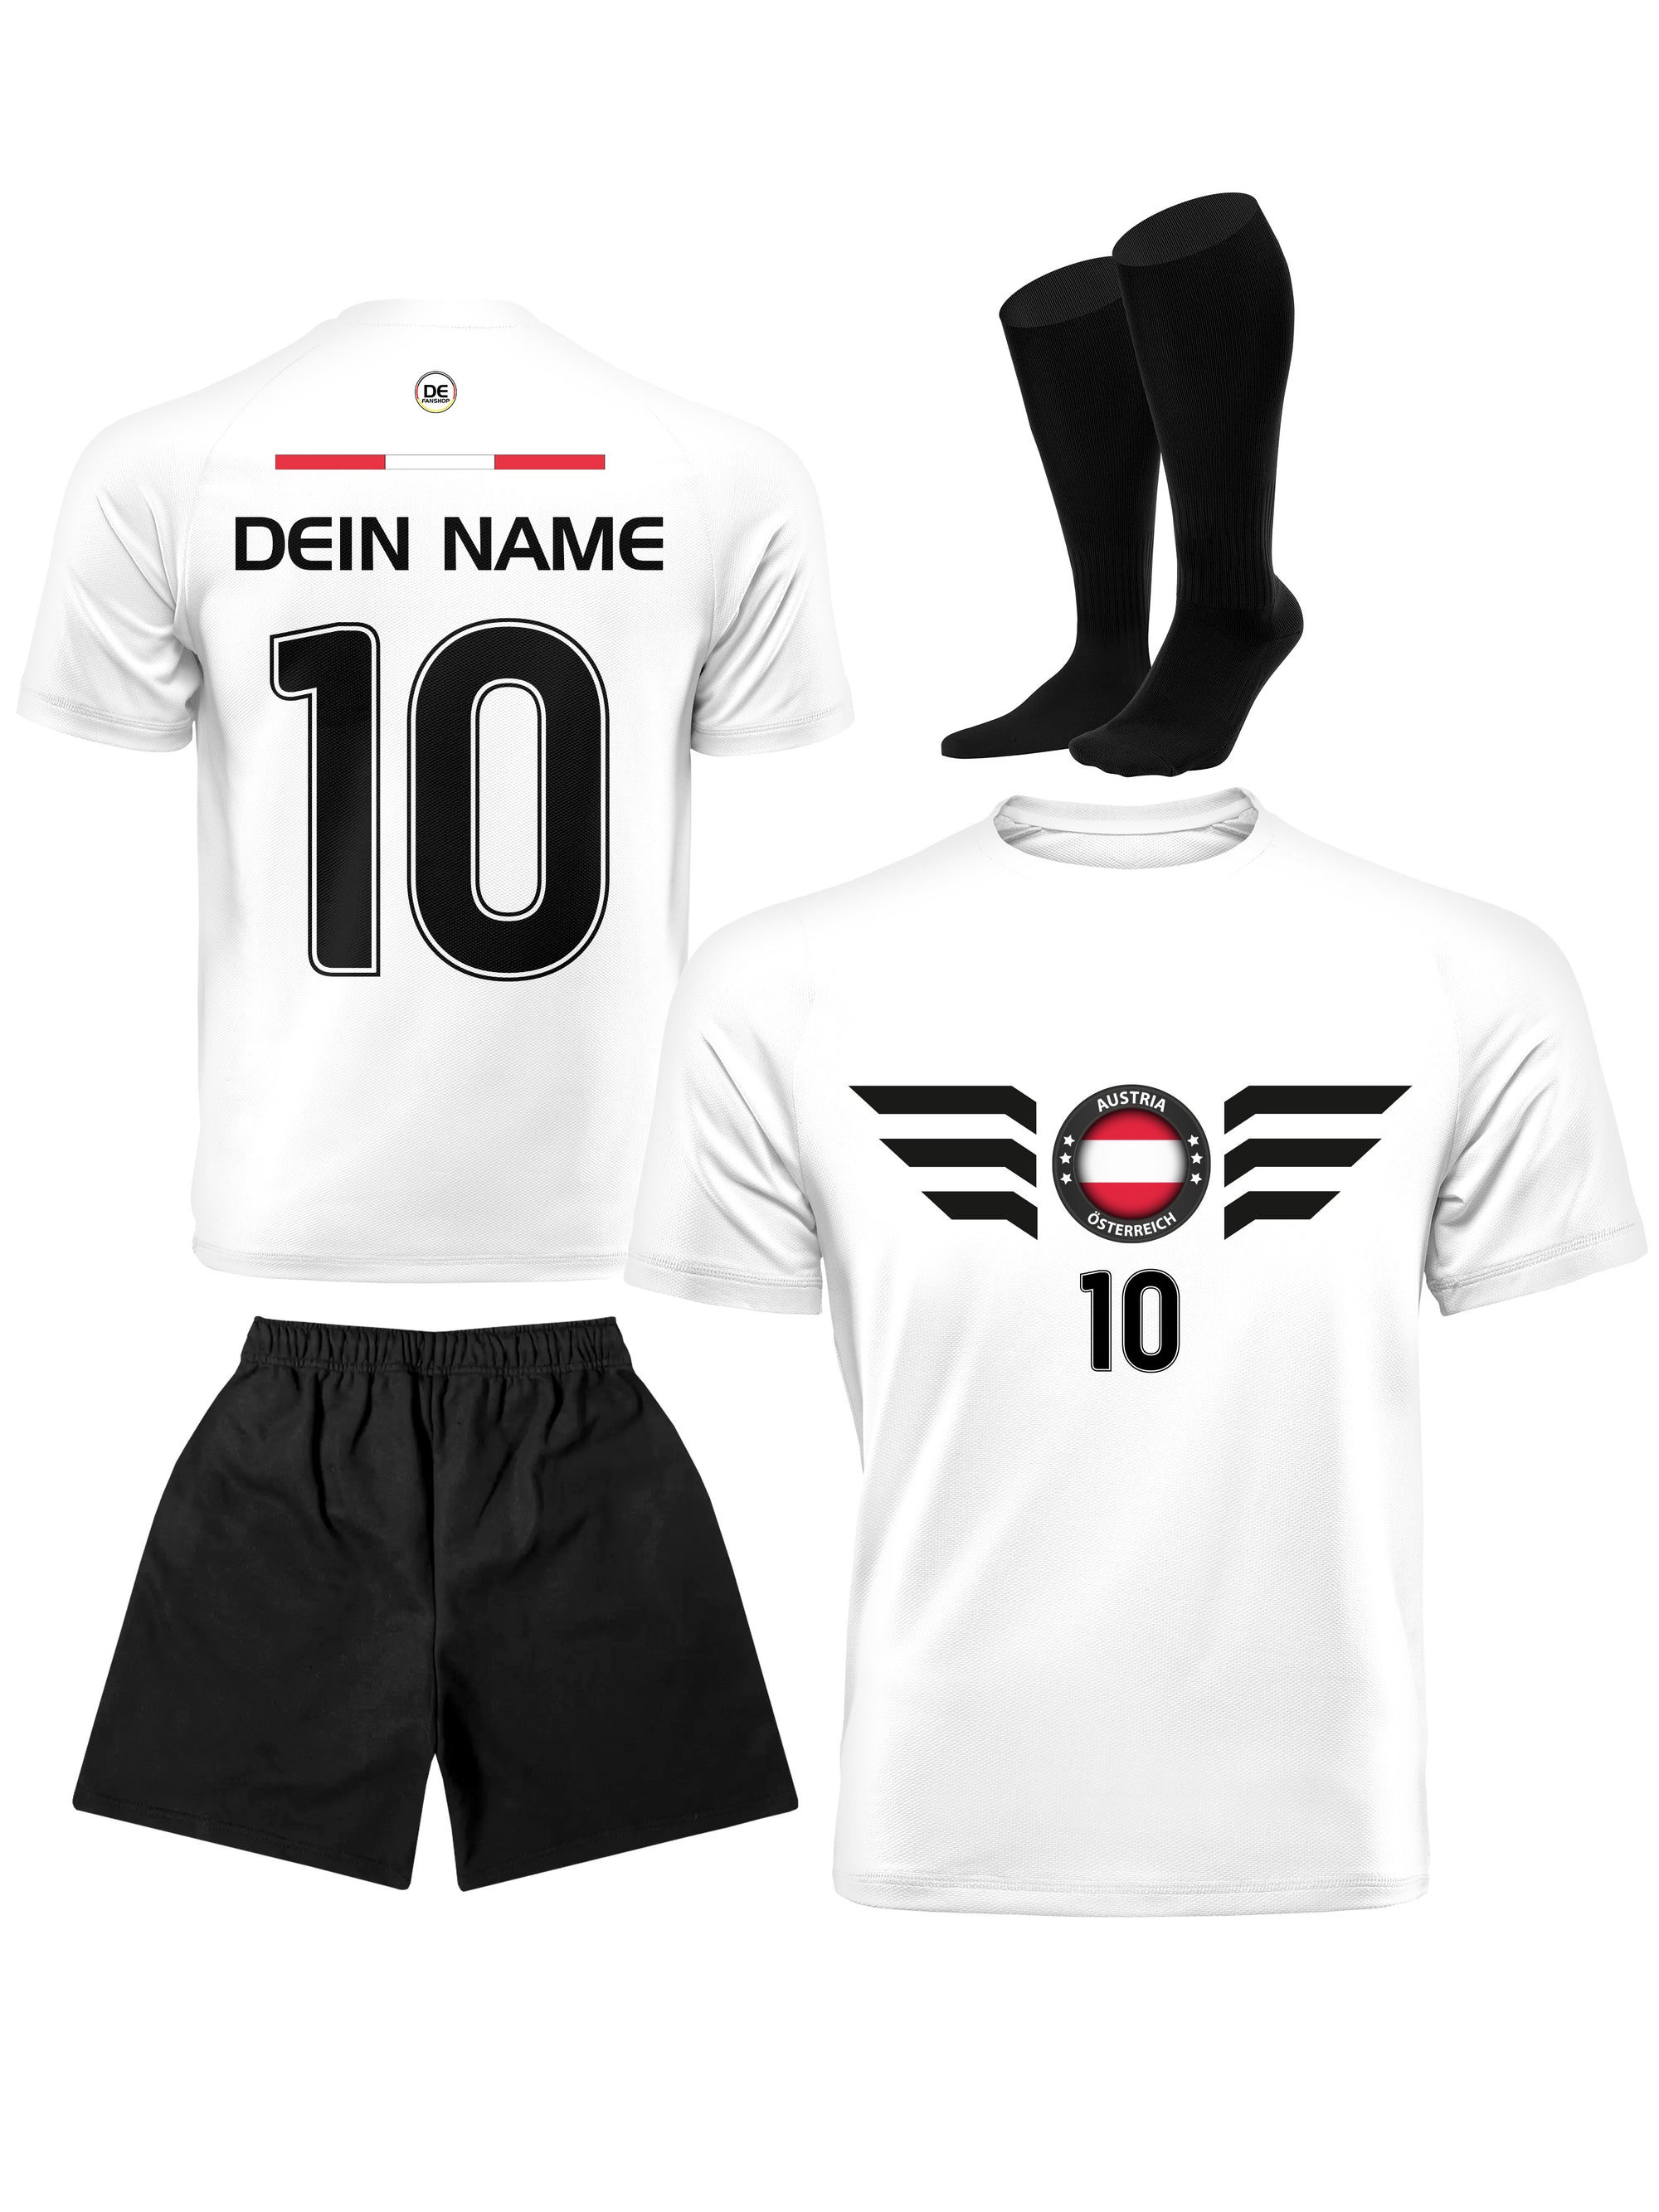 Österreich Fußball Trikot mit Dein Name + Hose Stutzen